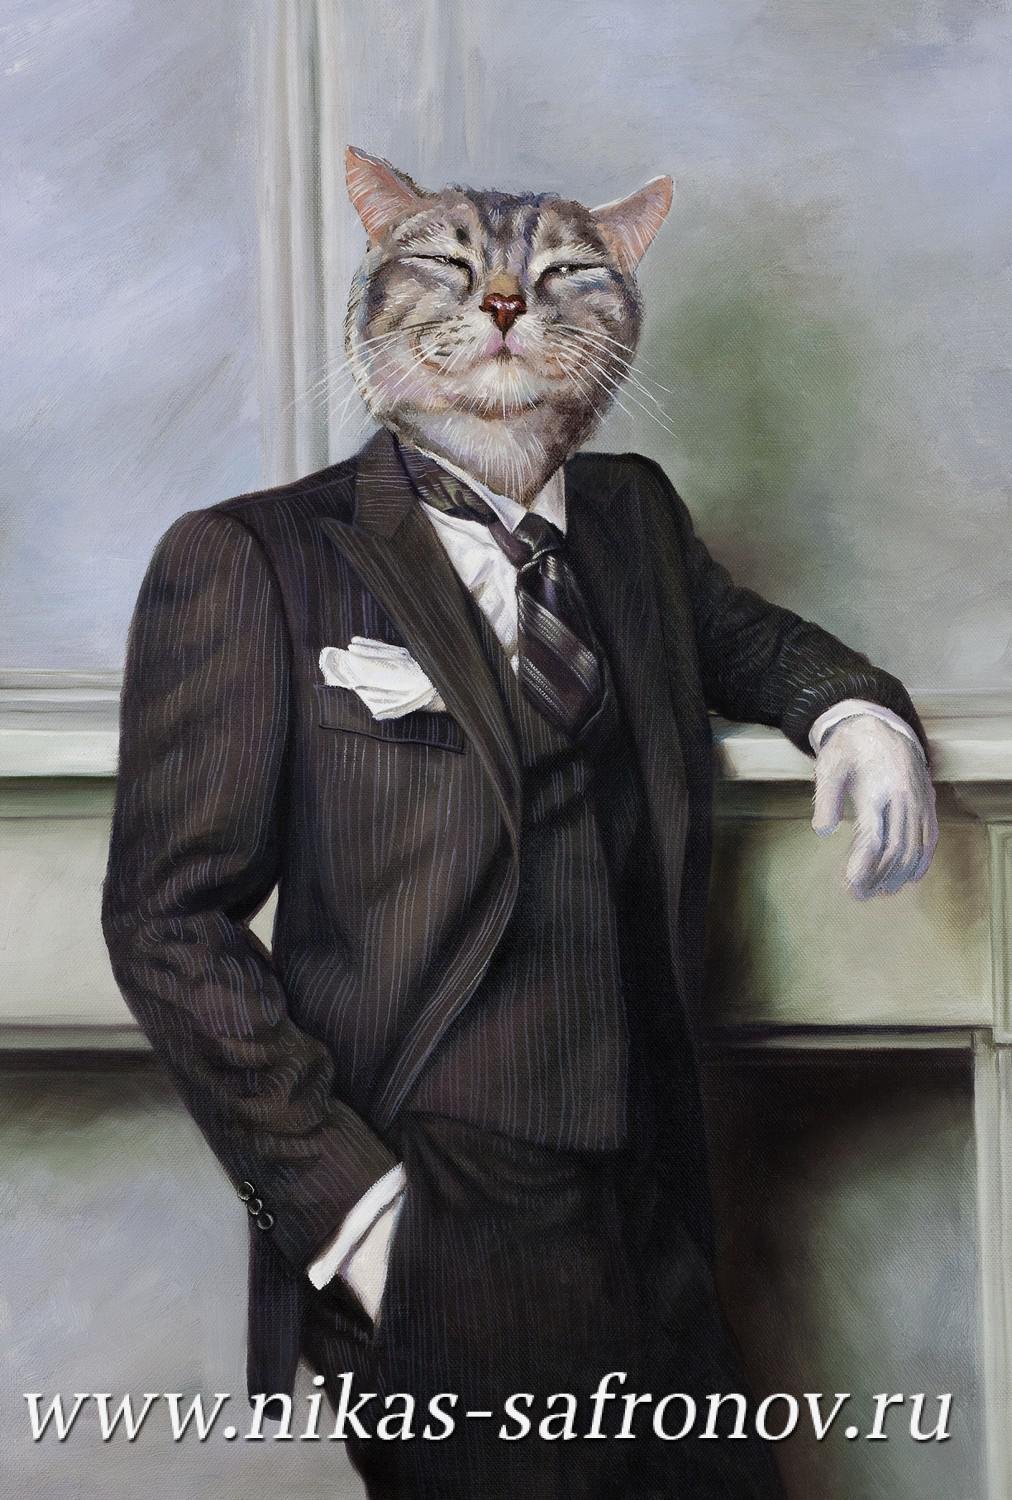 кот в пиджаке и галстуке арт